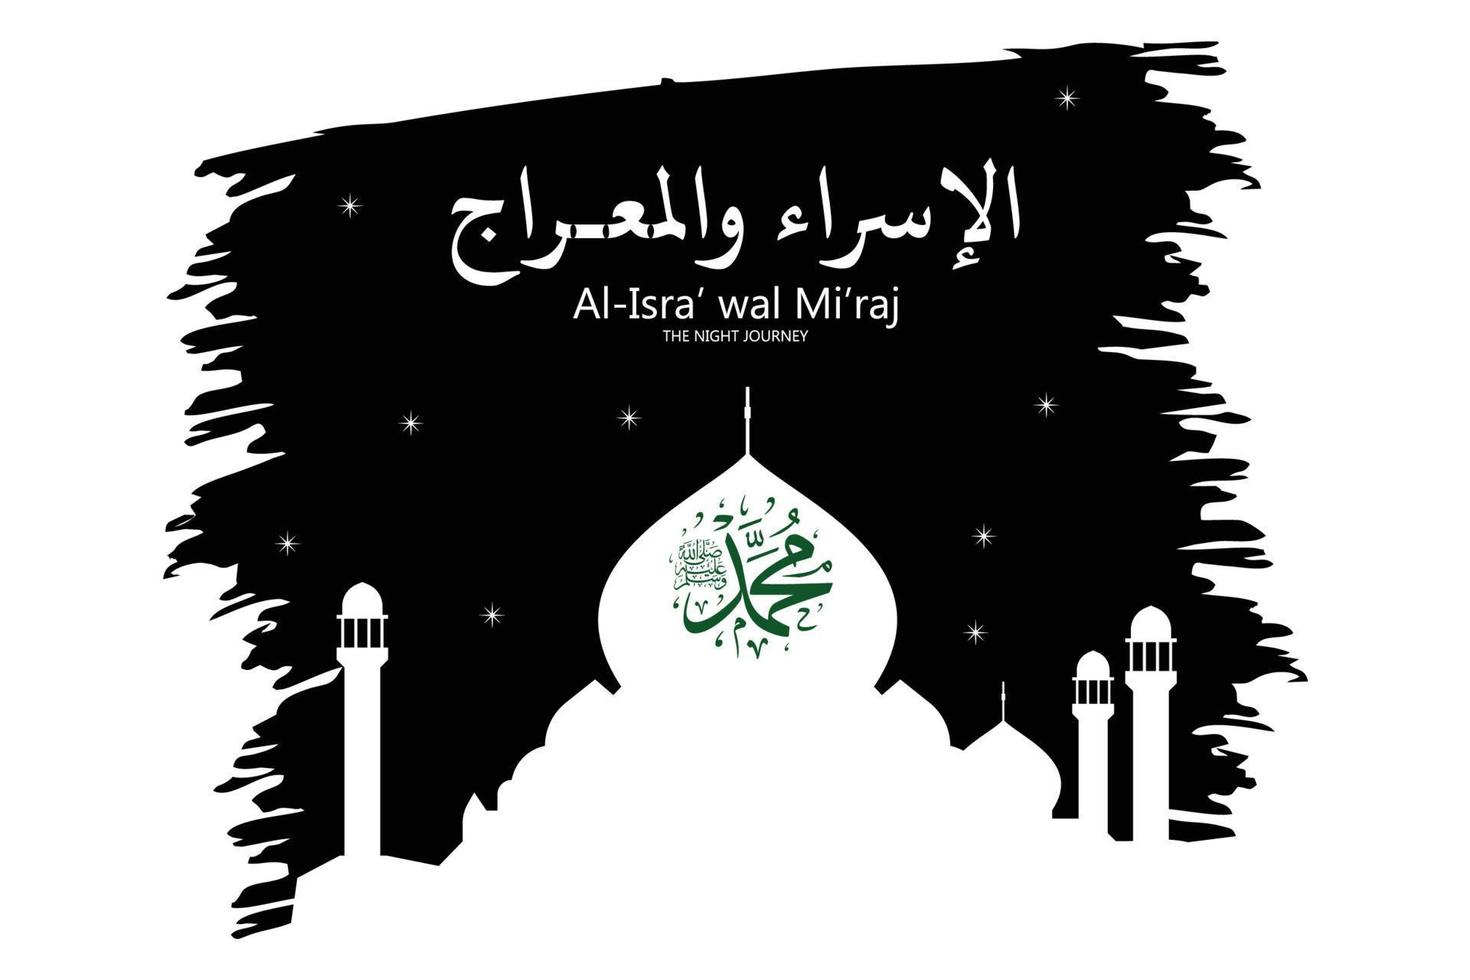 isra y la caligrafía árabe mi'raj significan dos partes del viaje nocturno del profeta muhammad - mezquita islámica haram y aqsa ilustración de pincel de silueta, ilustración moderna de vector plano